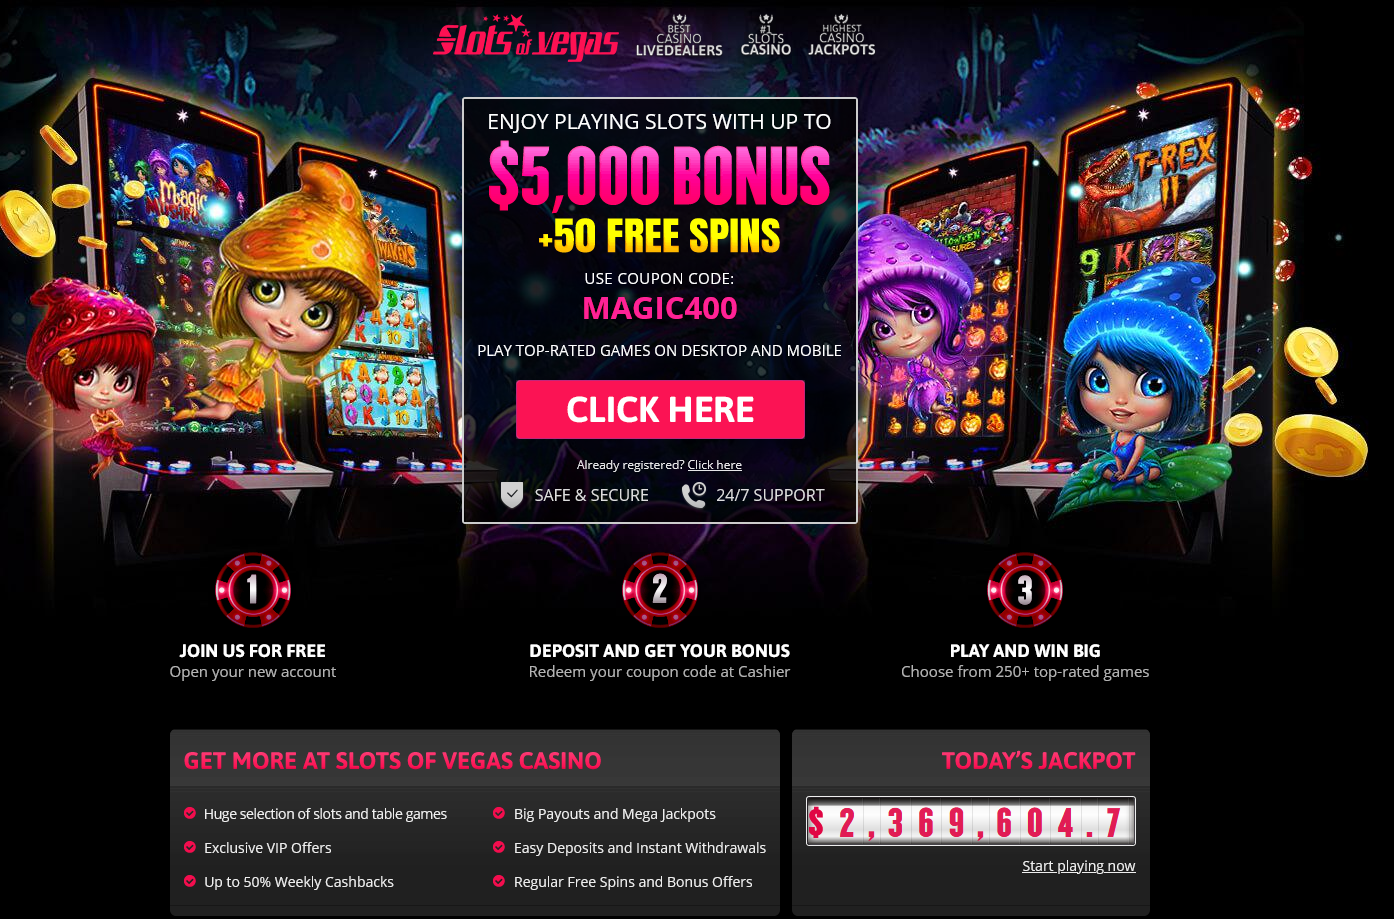 Slots of Vegas | Landing page | 400% Bonus + 50 Free Spins